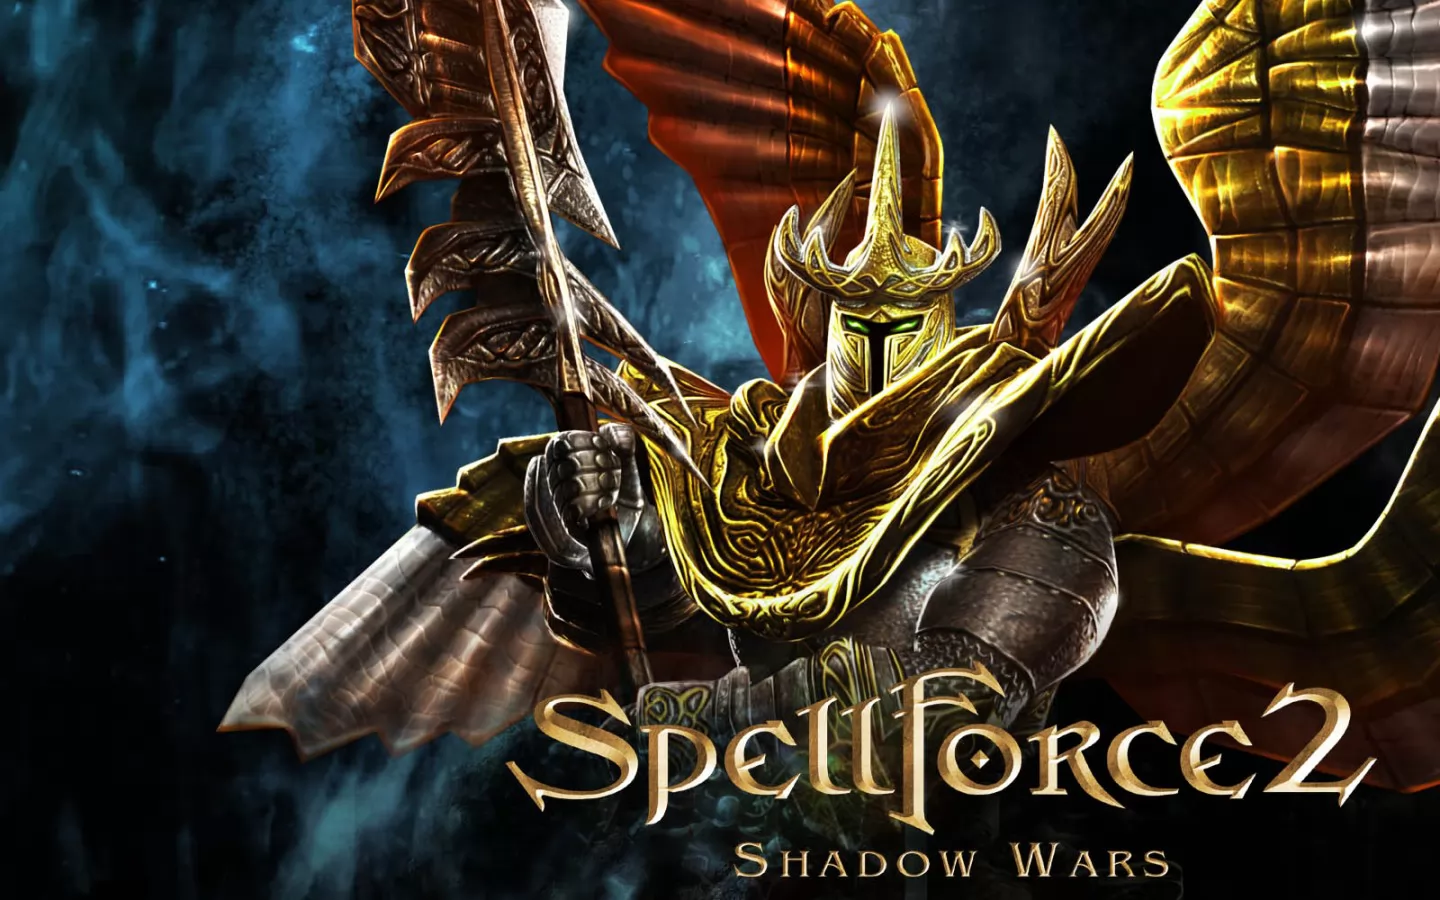 SpellForce 2: Shadow Wars,   